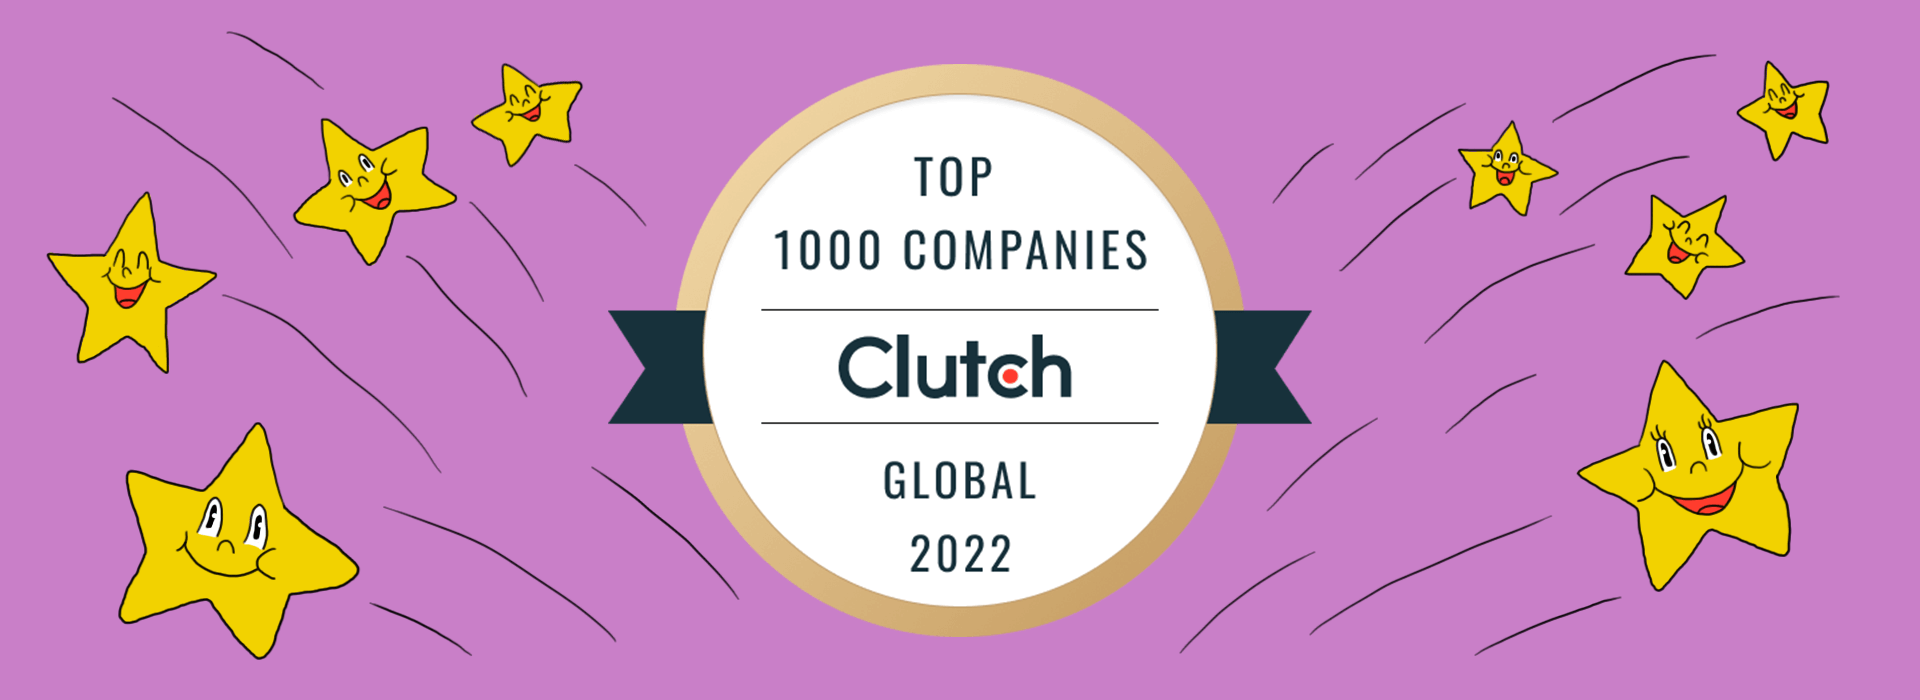 clutch top 1000 global